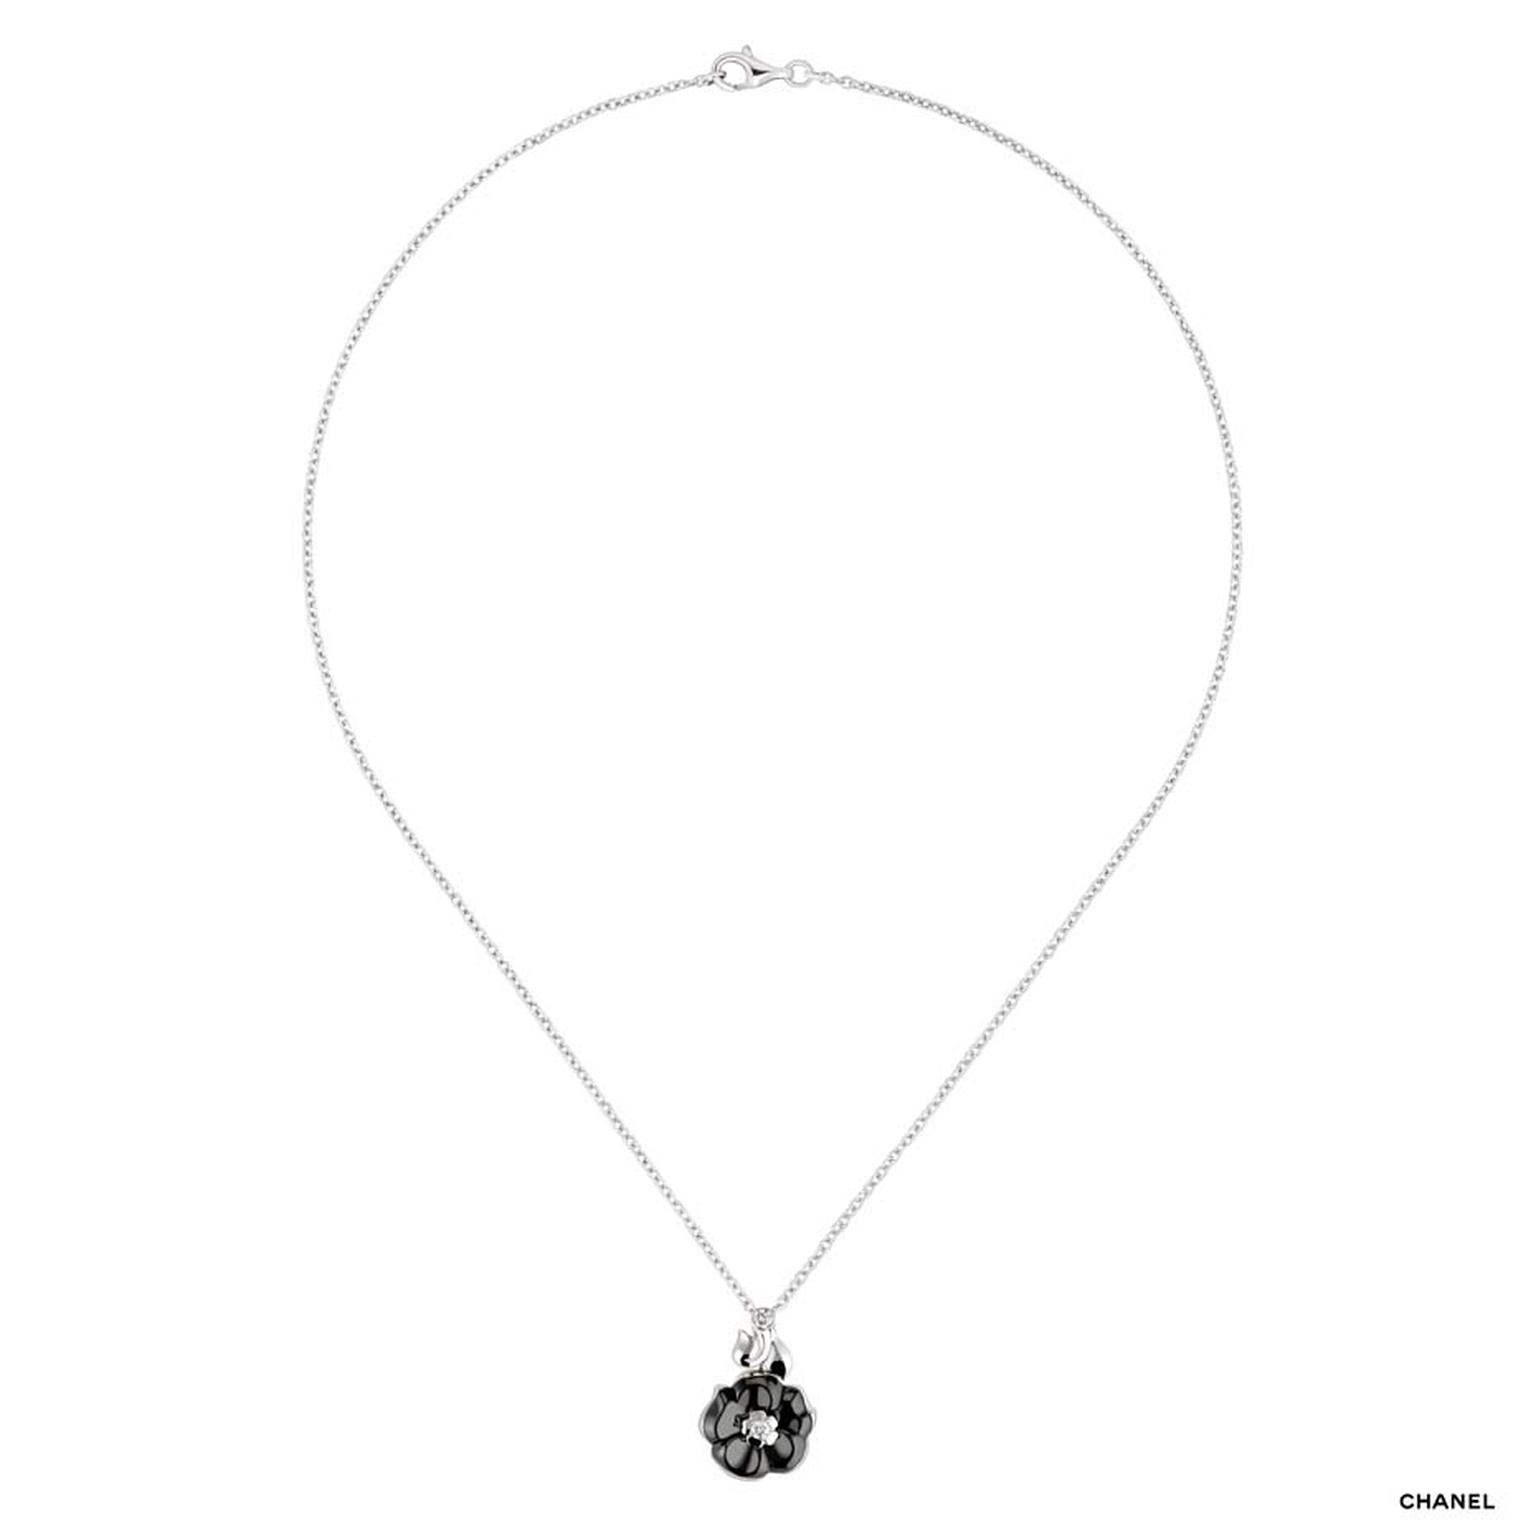 Chanel Camélia Galbé white gold pendant necklace with a